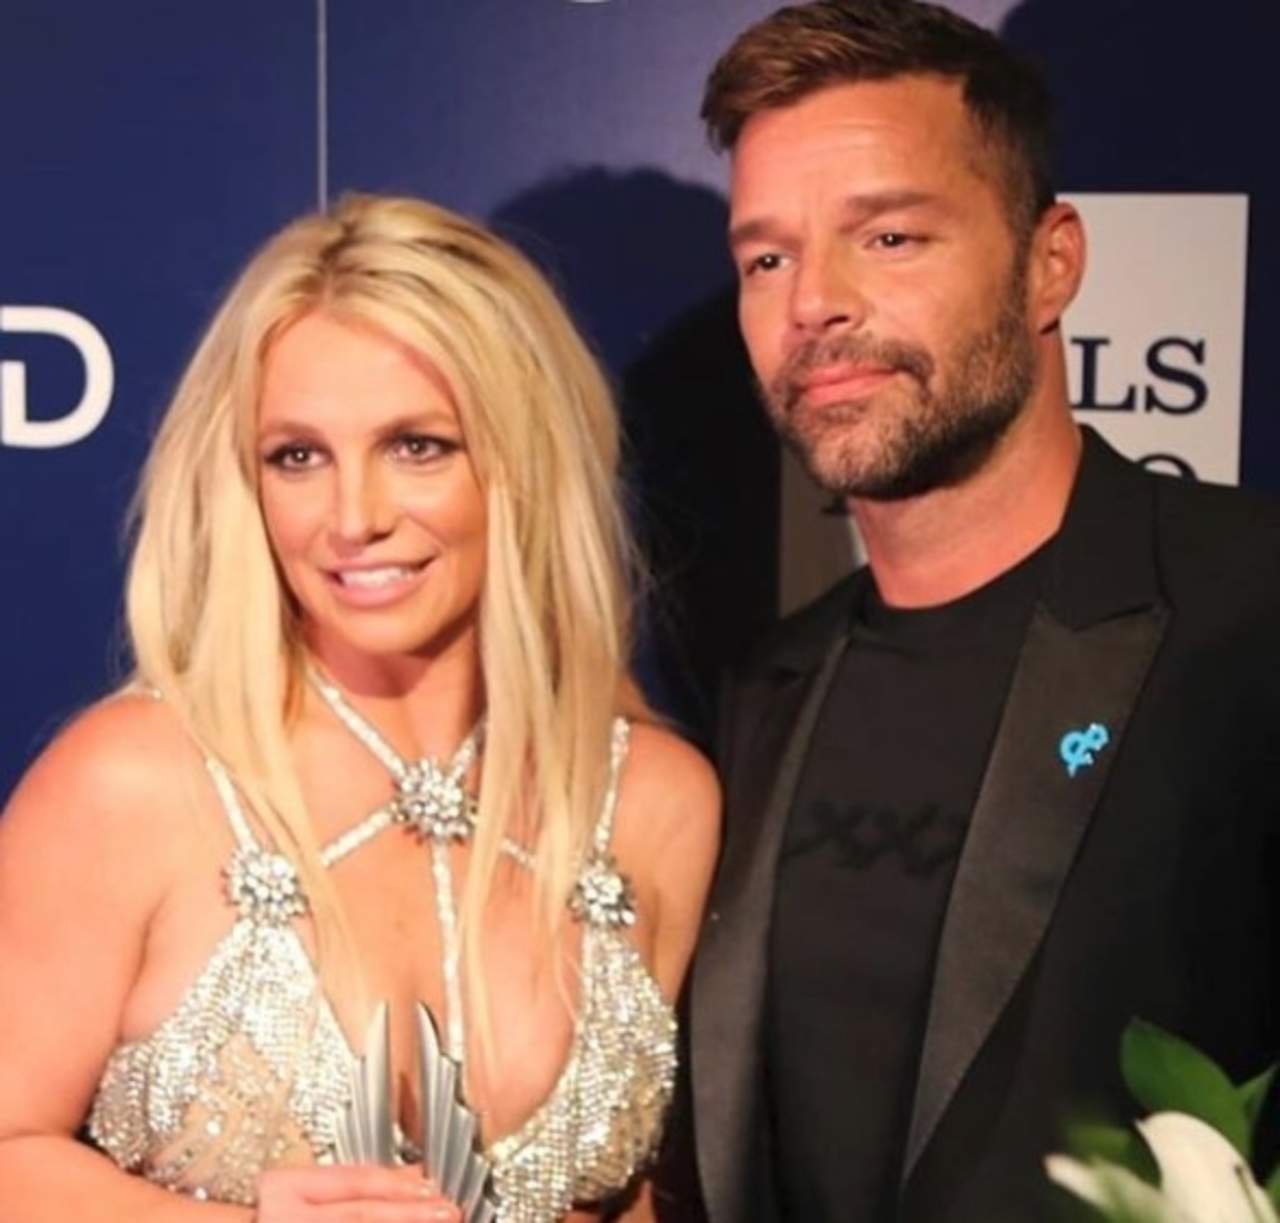 Britney Spears recibió el galardón 'Vanguard Award' y su premiación fue anunciada por el artista latino Ricky Martin, tras un conmovedor discurso. (ESPECIAL)